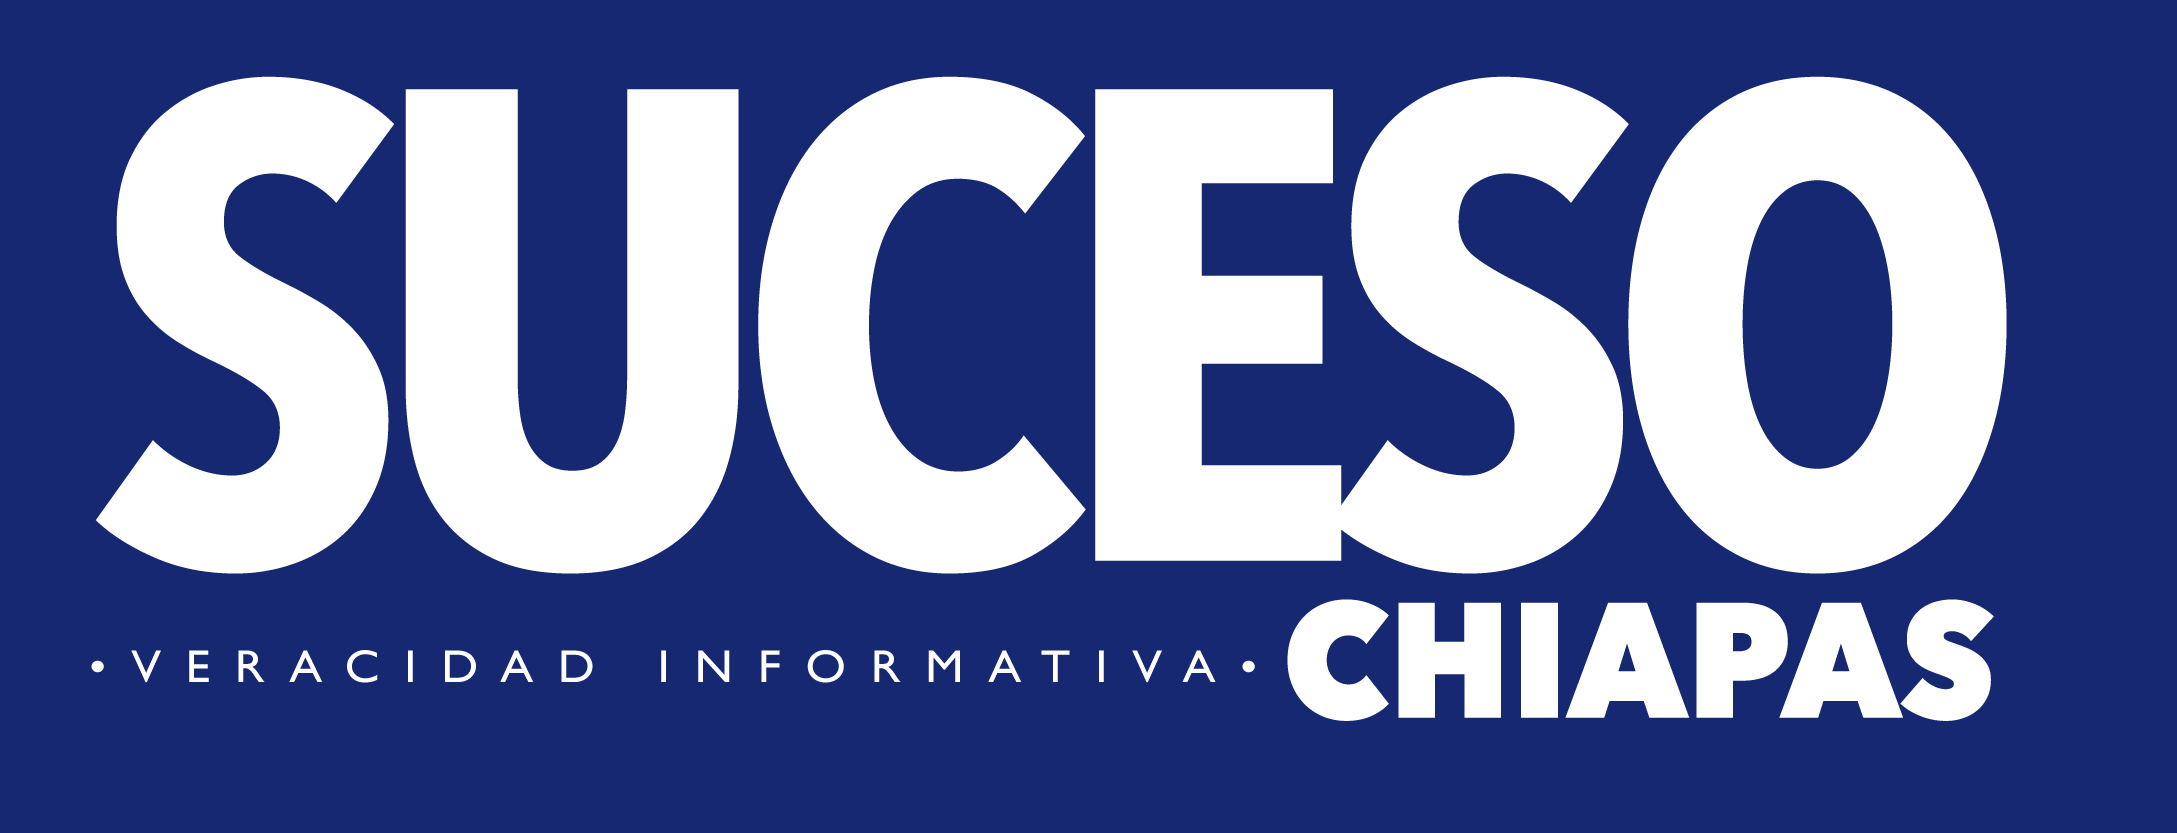 Suceso Chiapas - Veracidad Informativa